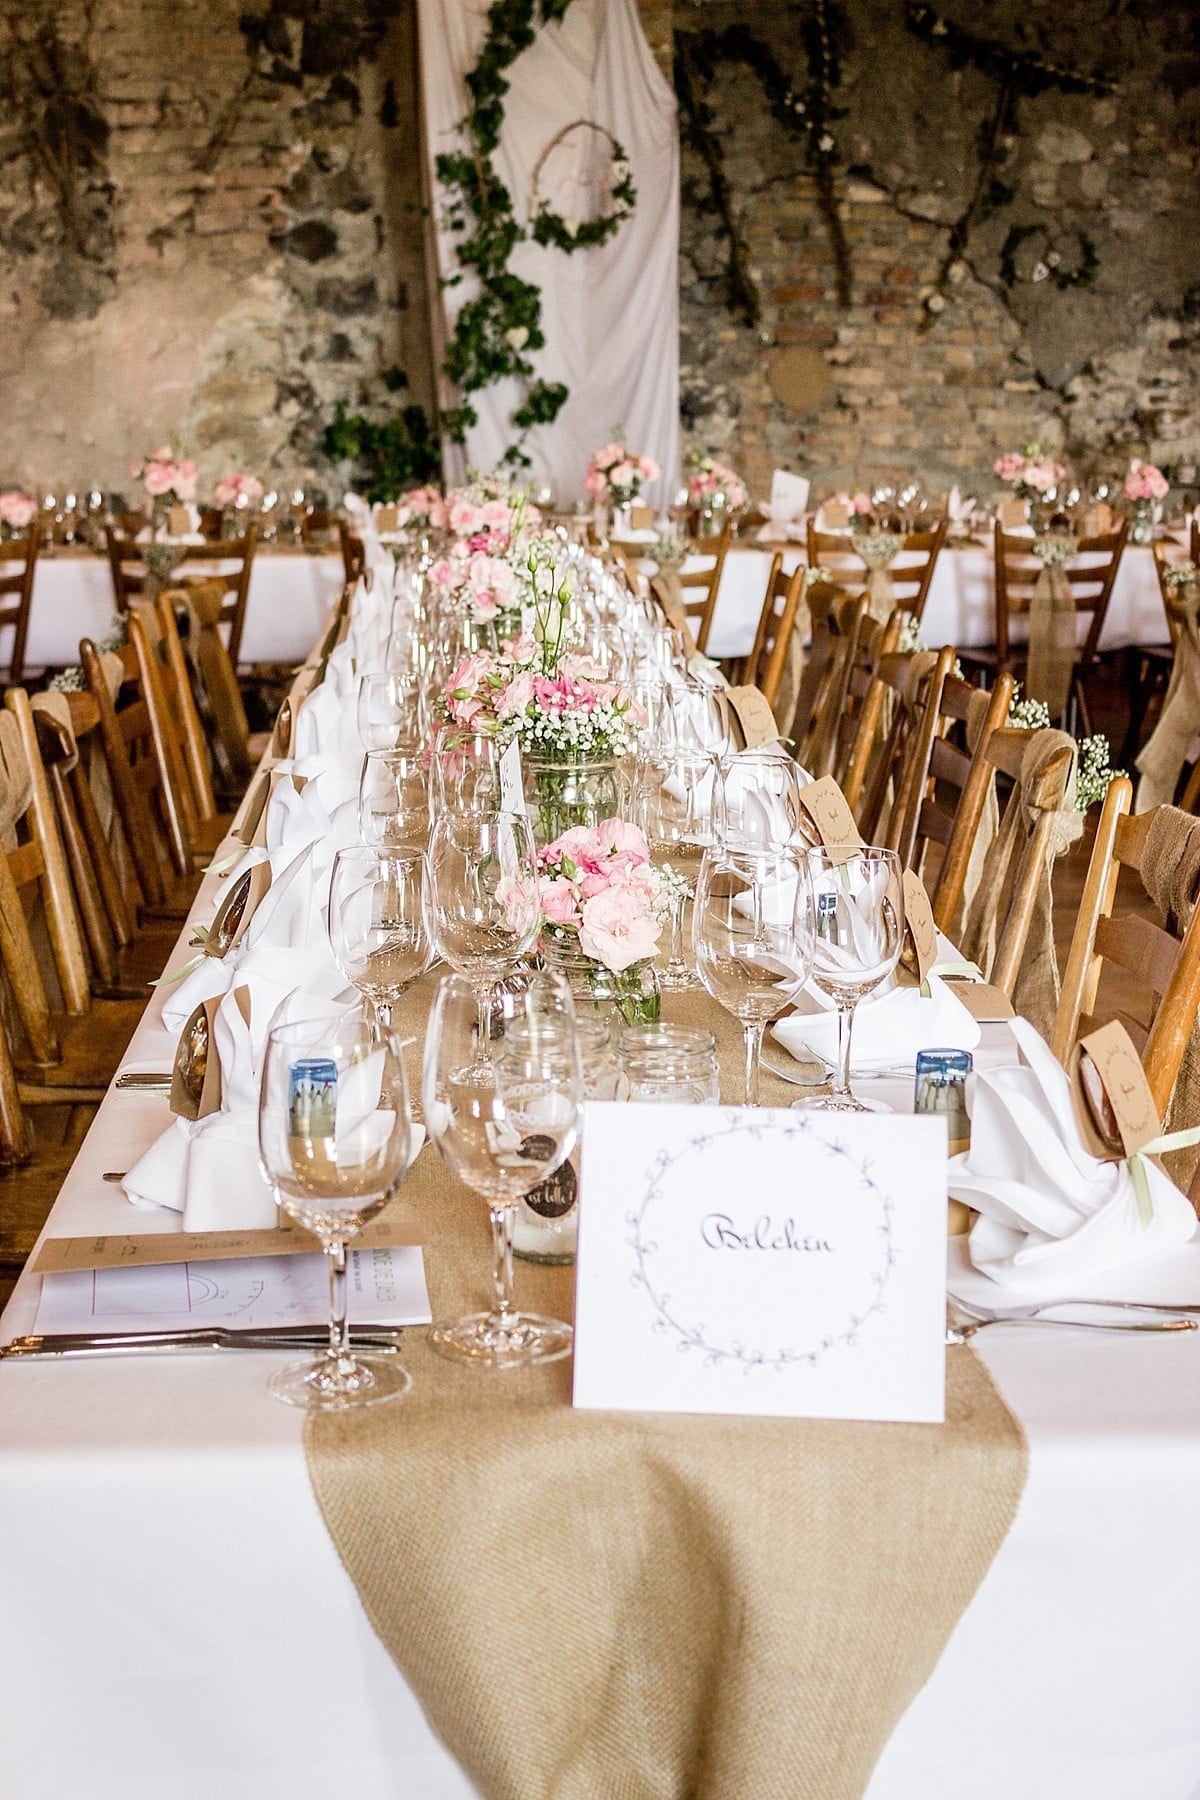 Hochzeitlich gedeckte Tische die mit Blumen geschmückt sind.